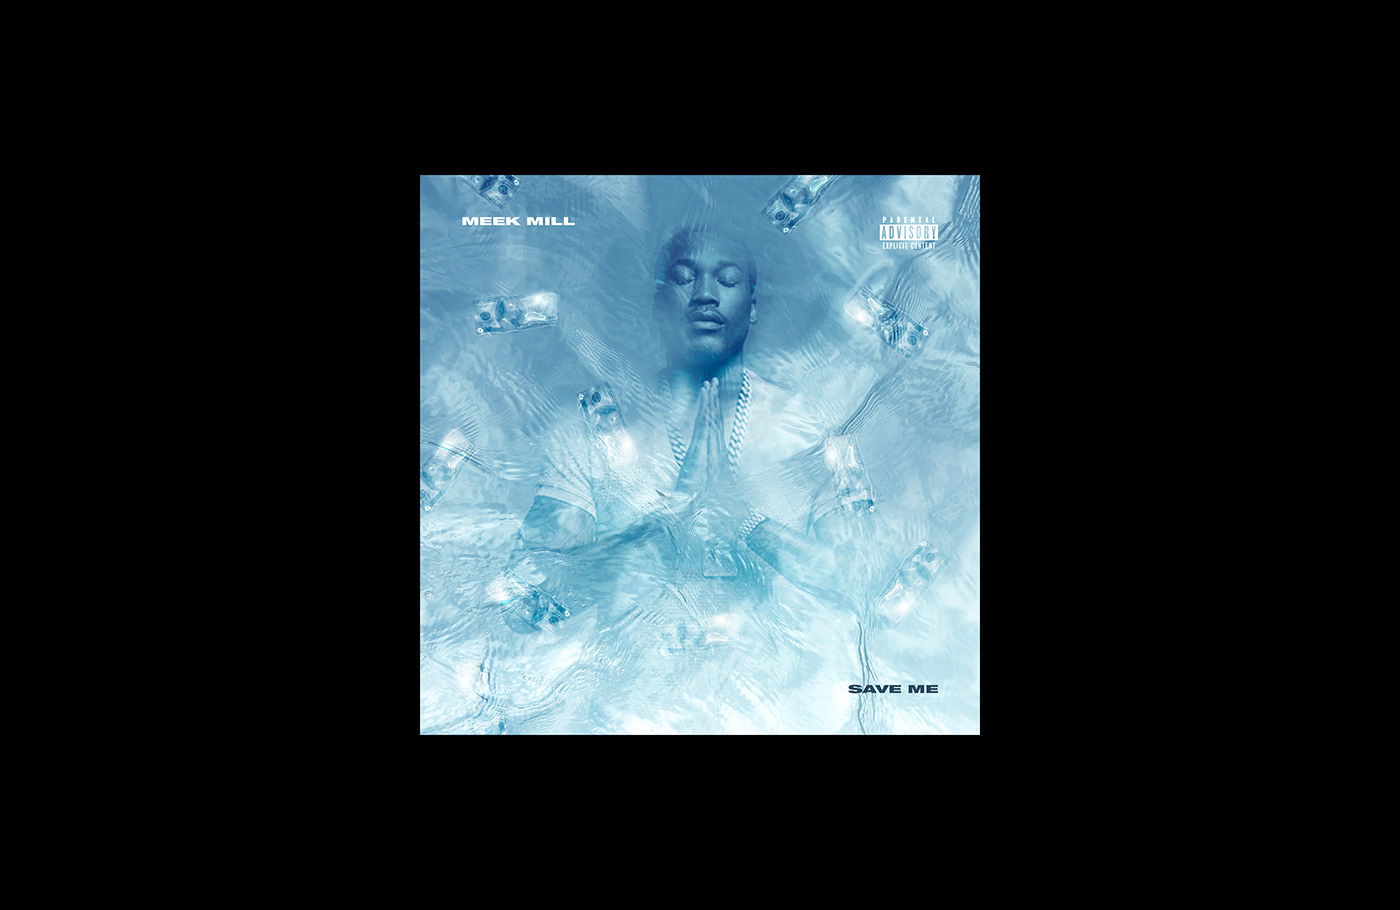 Album artwork cover art music branding  Drake asap rocky j cole art direction 